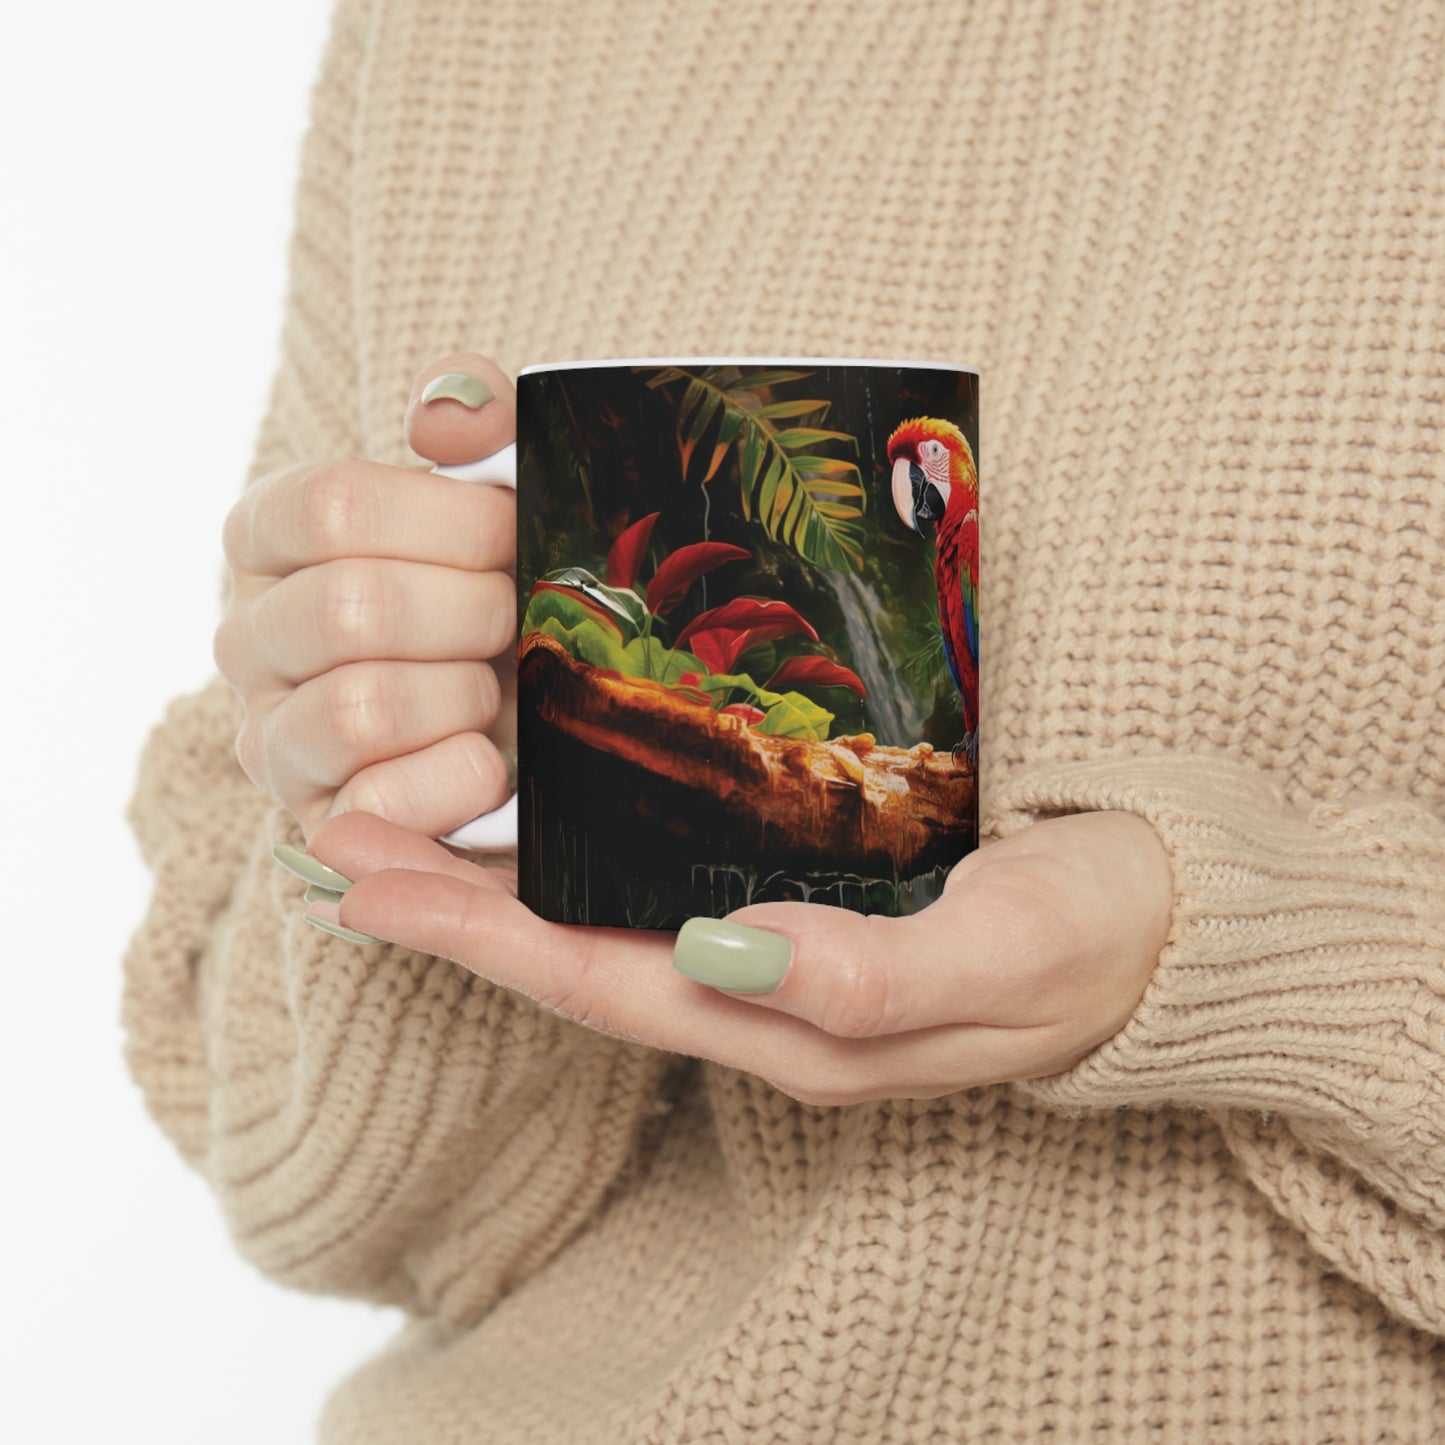 Scarlet Macaw | Ceramic Mug 11oz | Chrome